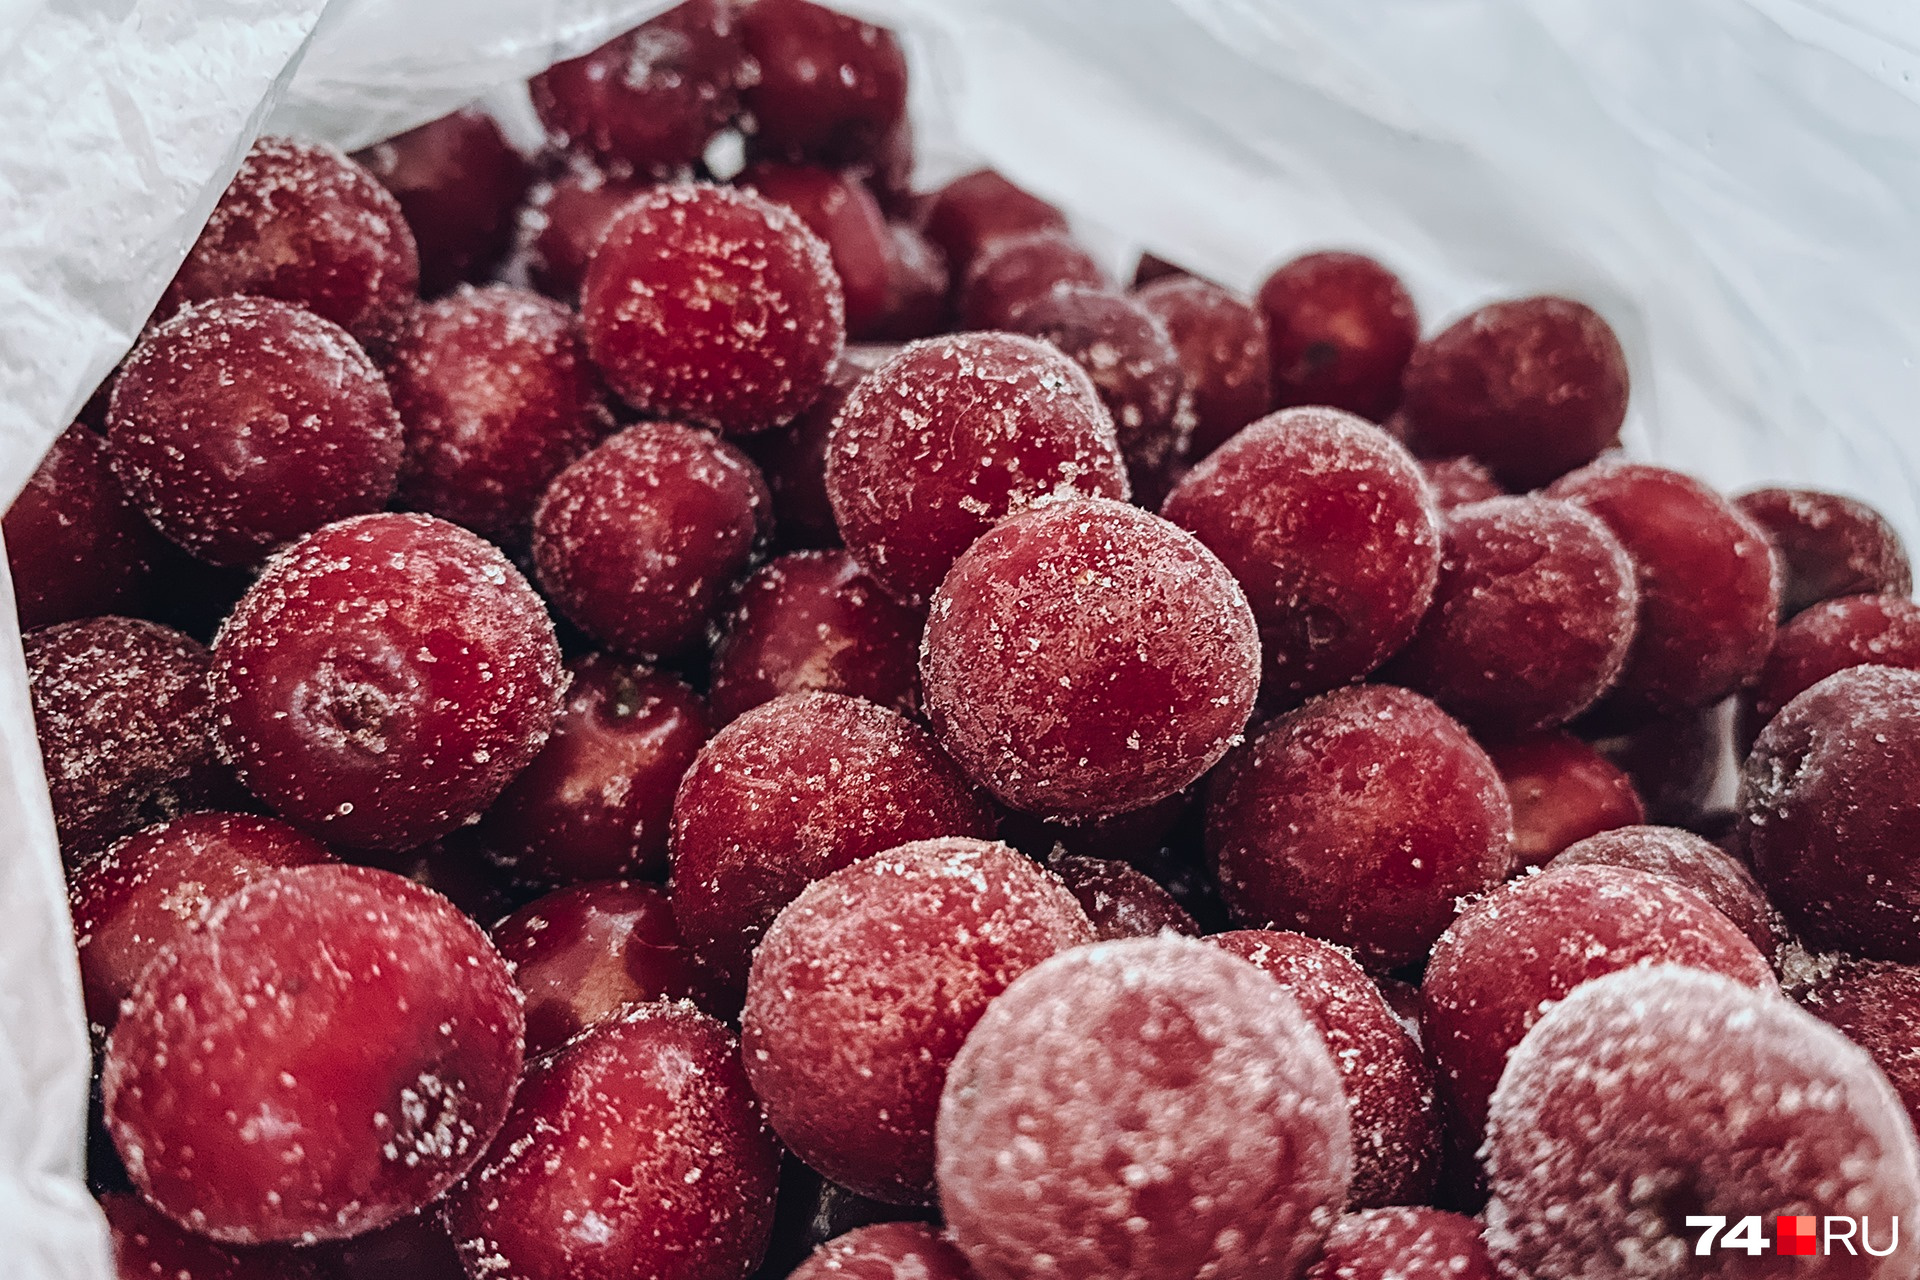 При правильной разморозке ягоды могут потерять внешний вид, но полезные свойства сохранят